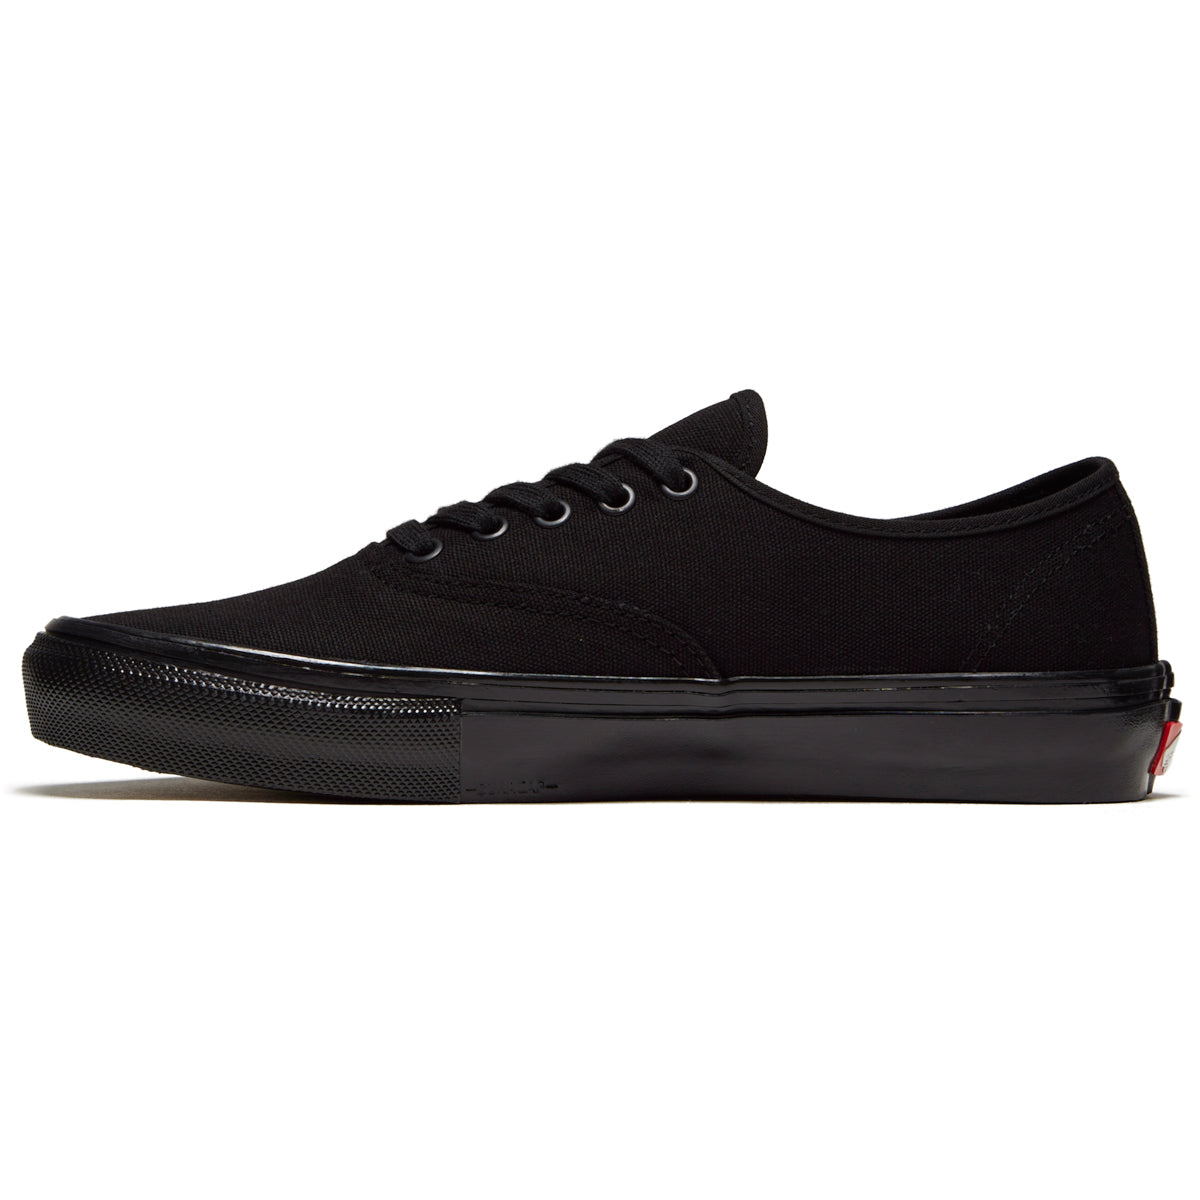 Vans Skate Authentic Shoes - Black/Black image 2